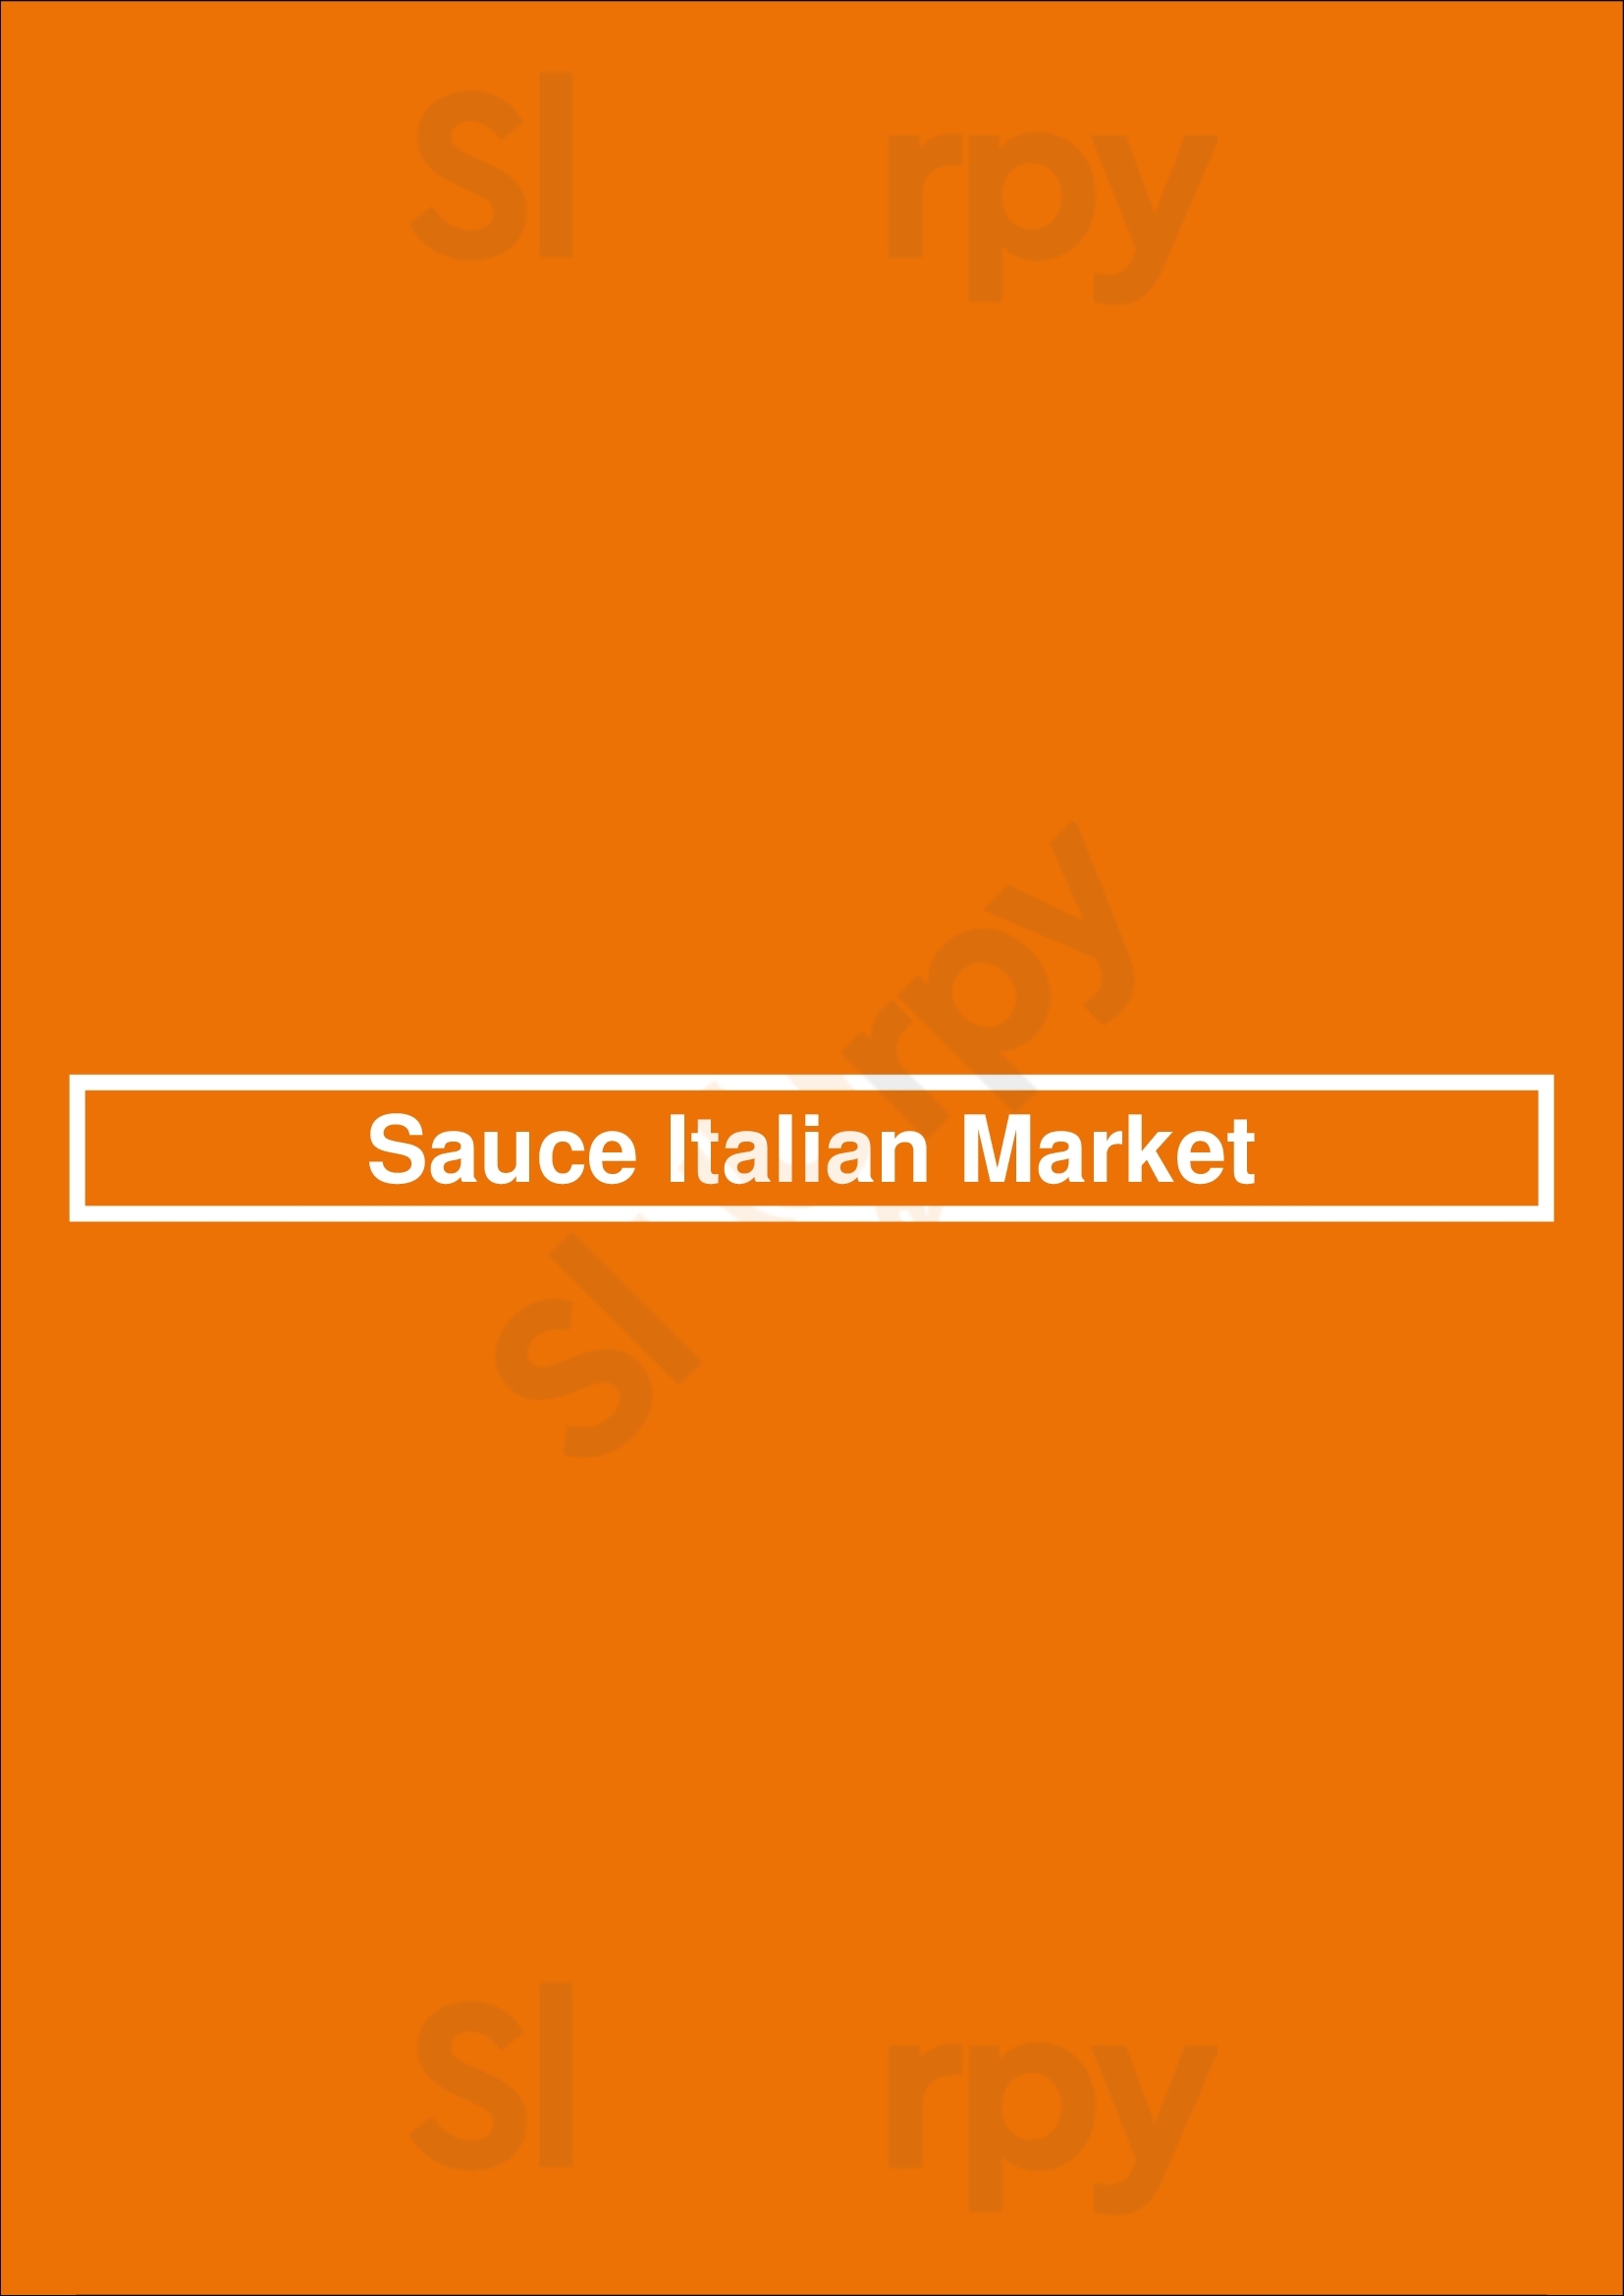 Sauce Italian Market Calgary Menu - 1